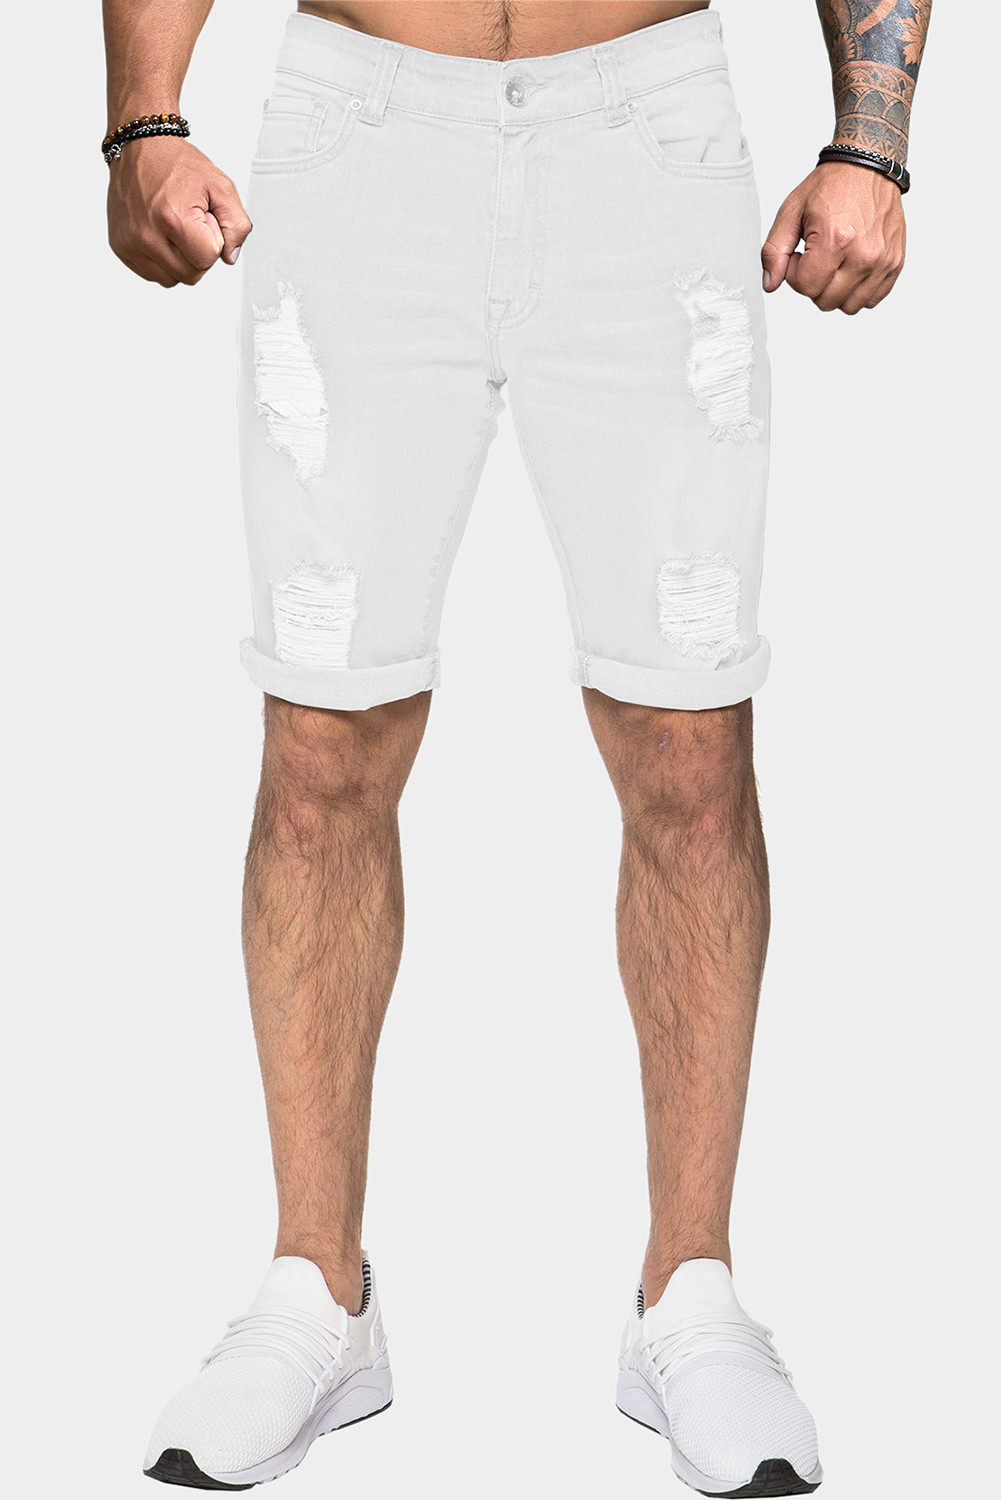 Pantalones cortos de mezclilla de hombre rasgados y ajustados blancos